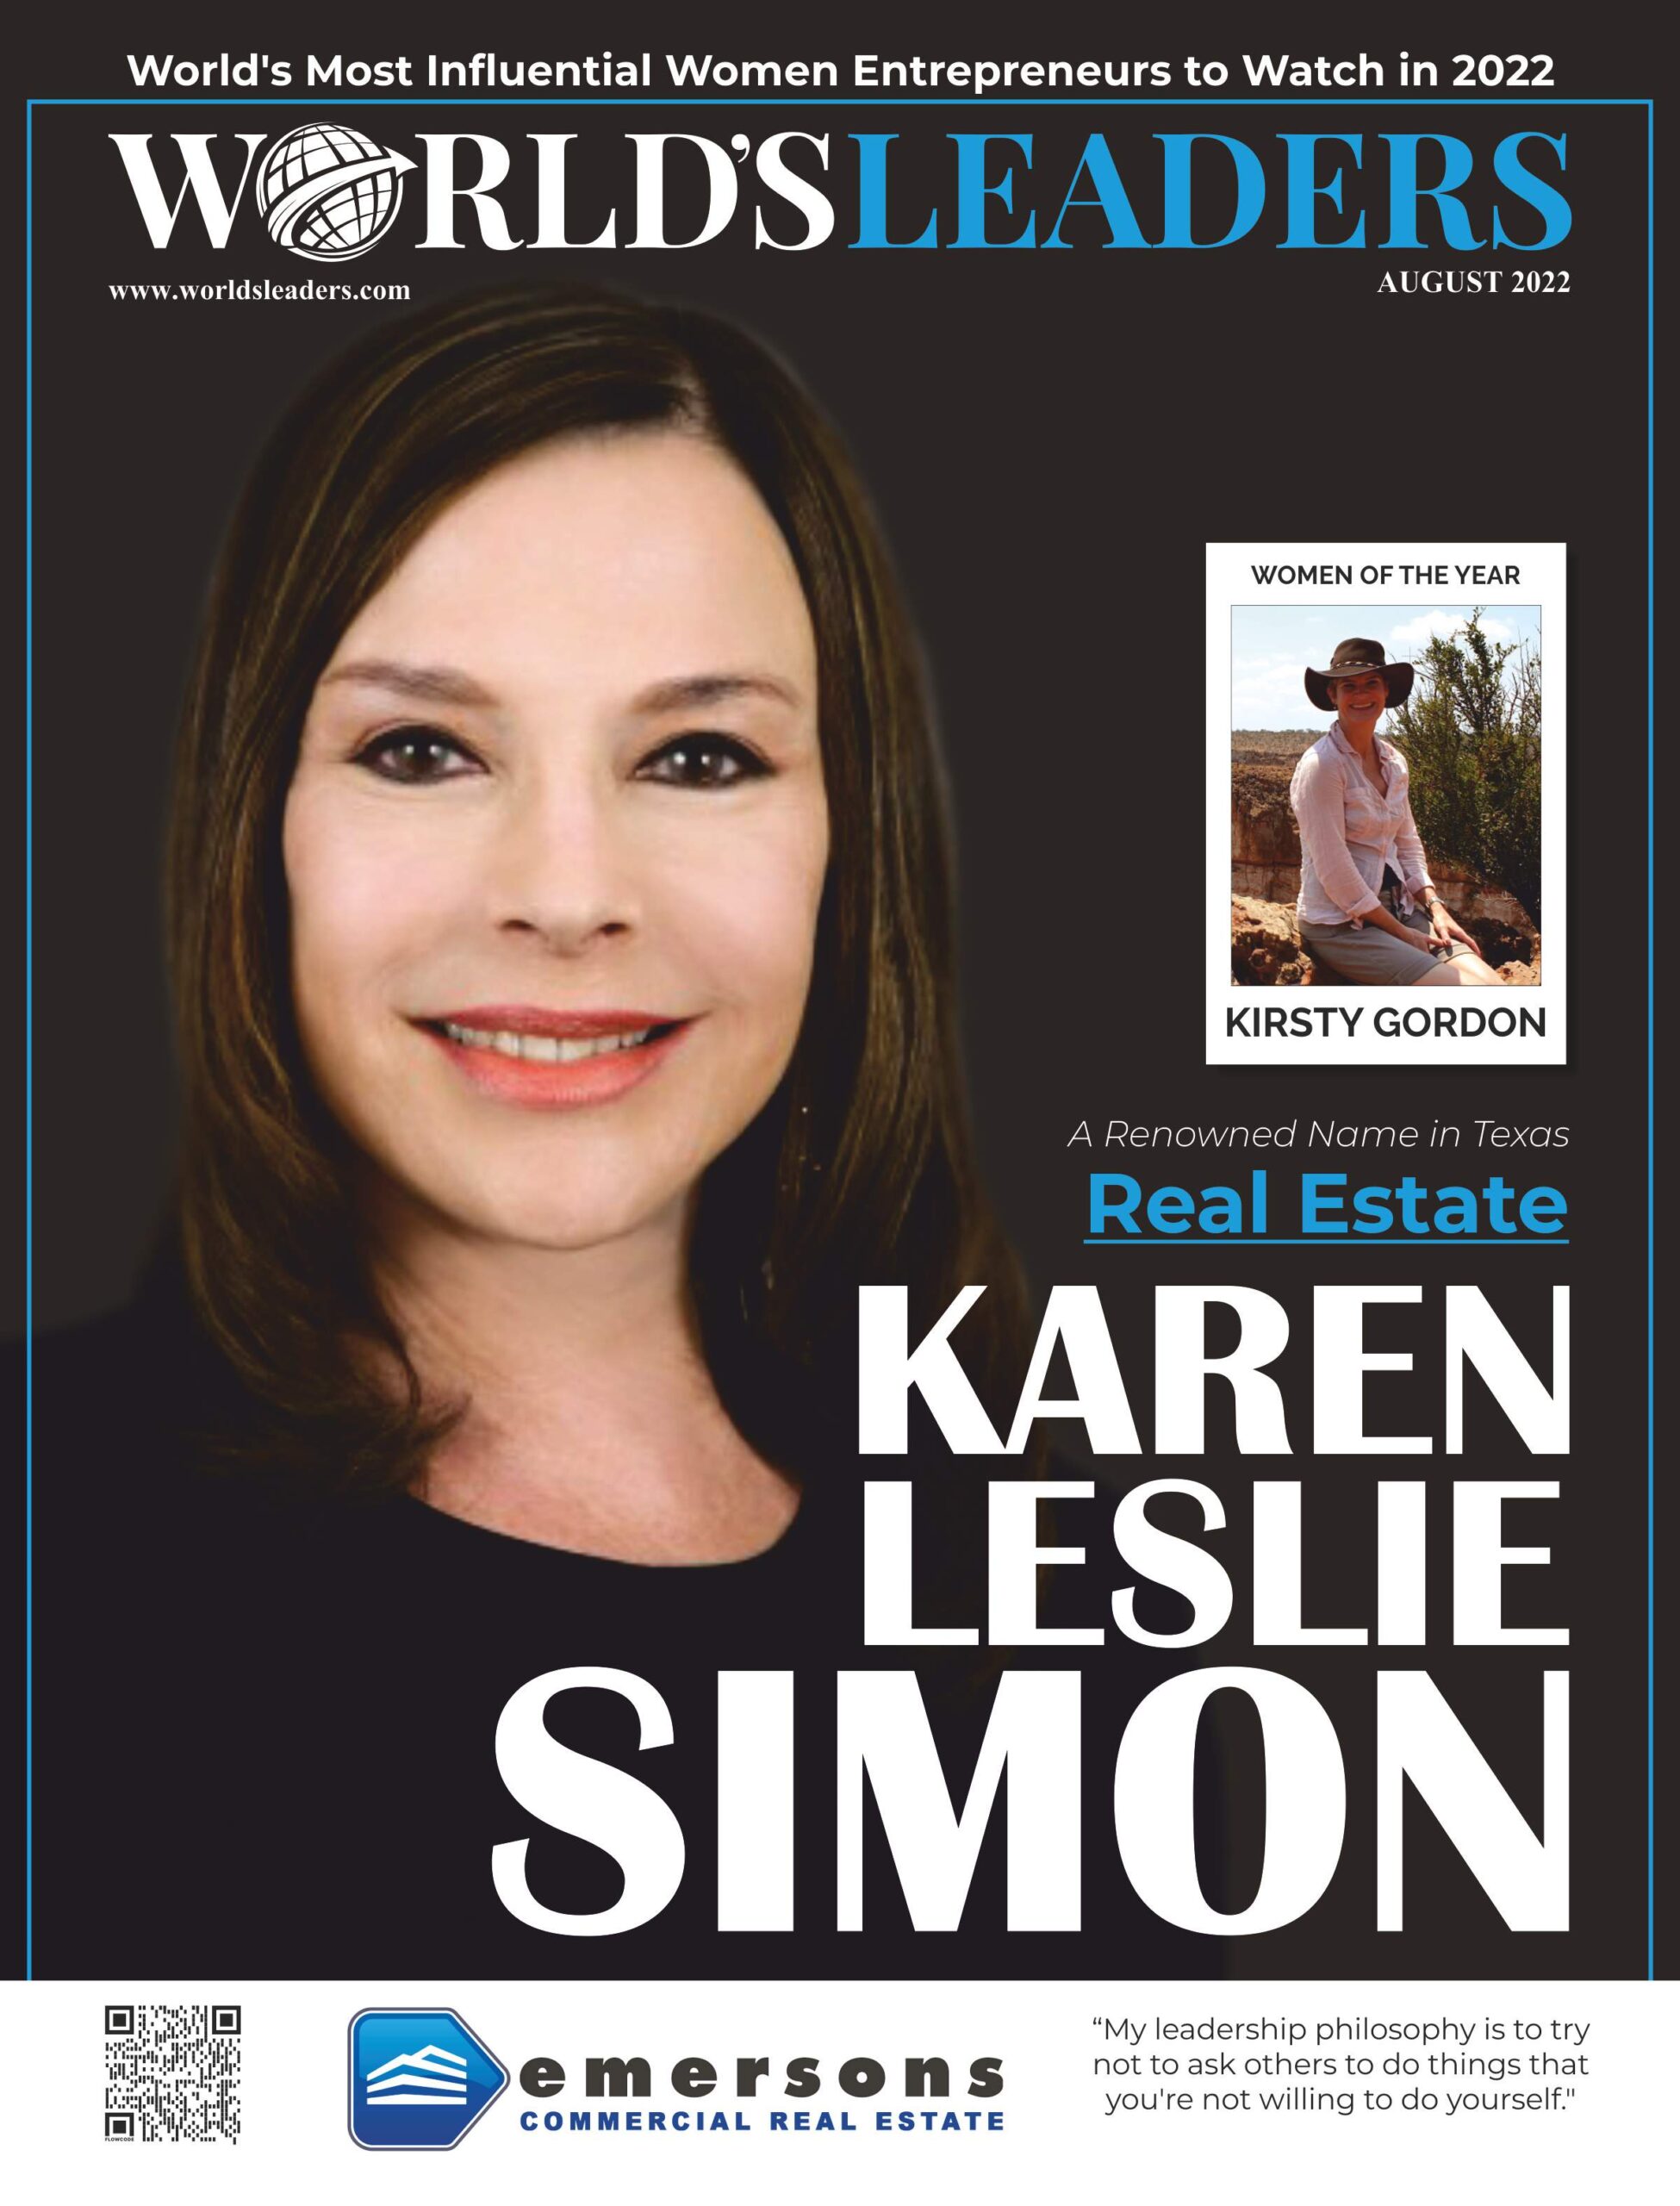 Karen Leslie Simon